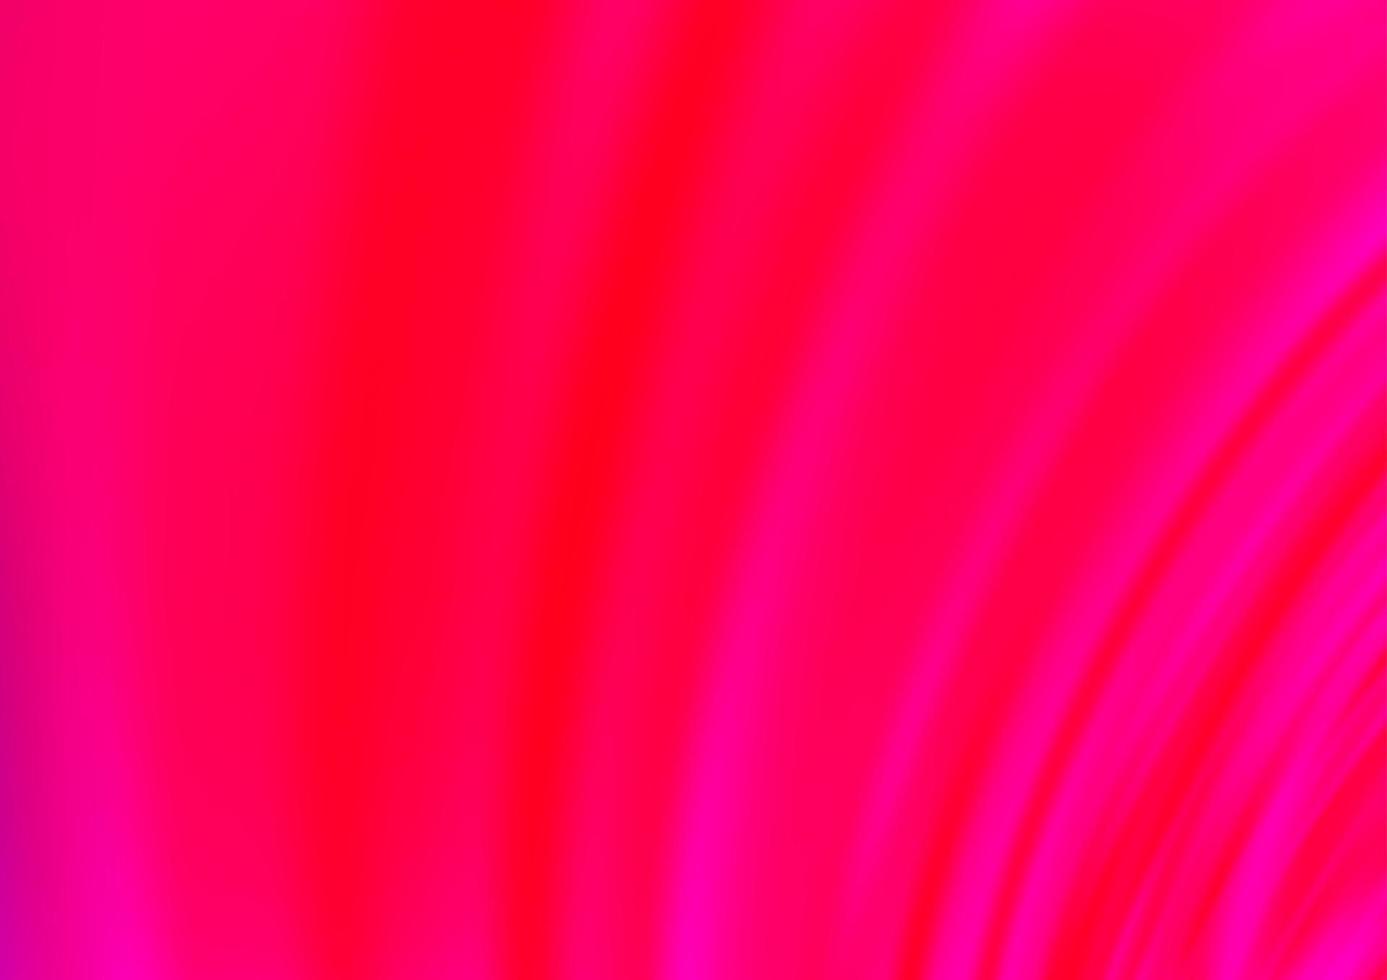 fundo vector rosa claro roxo com linhas abstratas.